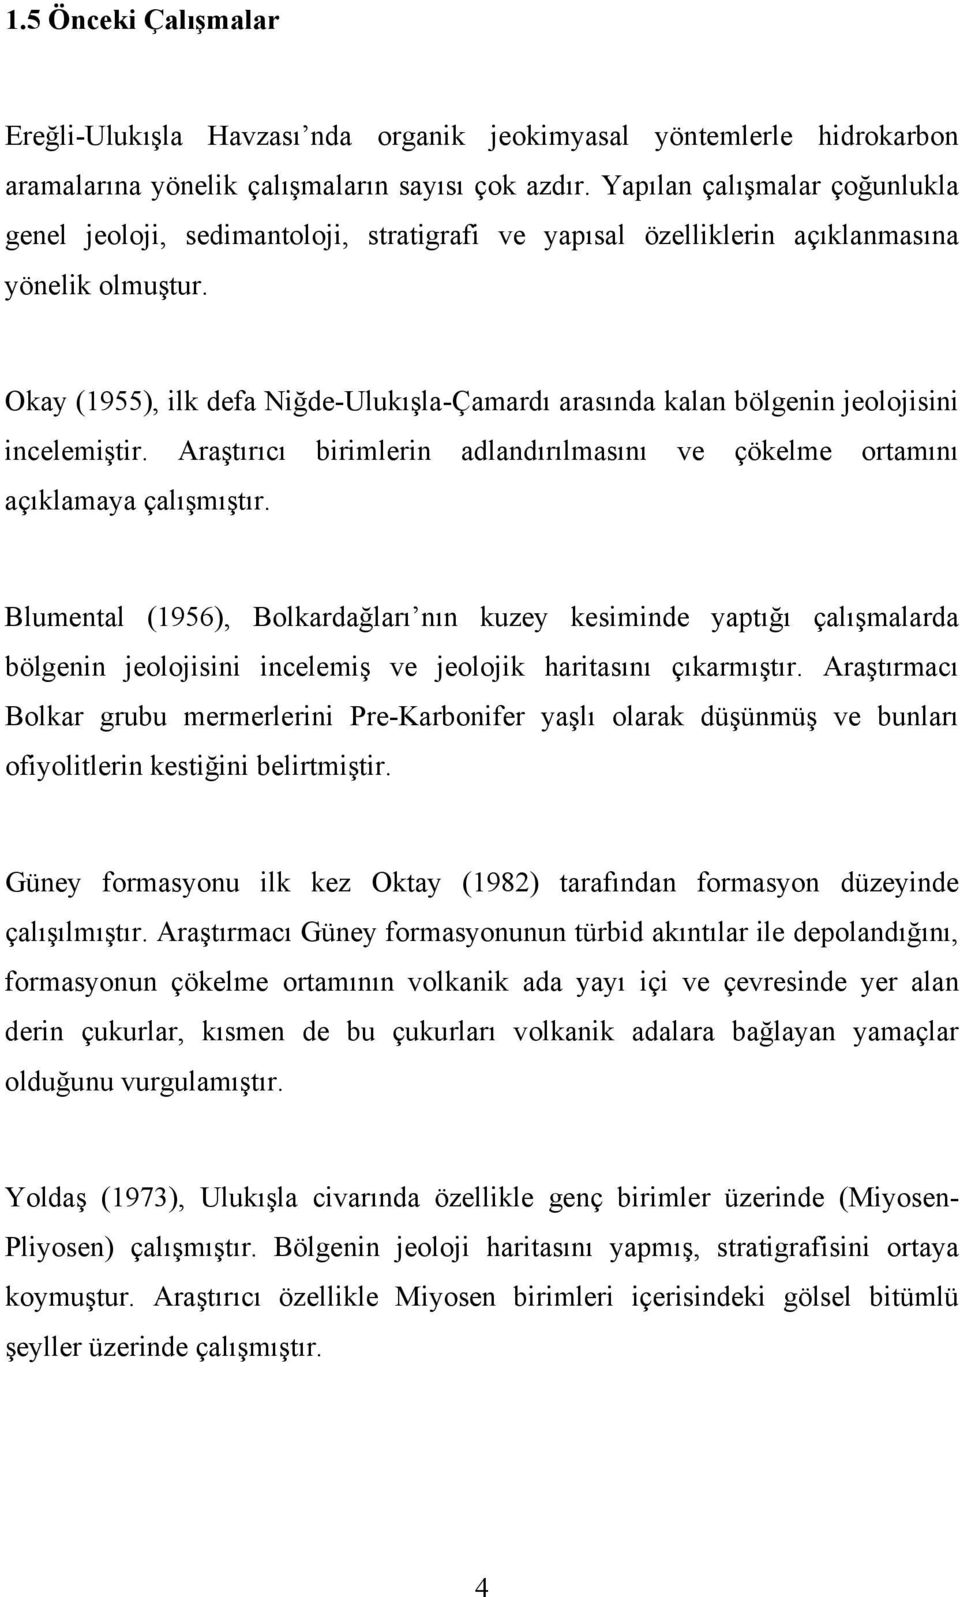 Okay (1955), ilk defa Niğde-Ulukışla-Çamardı arasında kalan bölgenin jeolojisini incelemiştir. Araştırıcı birimlerin adlandırılmasını ve çökelme ortamını açıklamaya çalışmıştır.